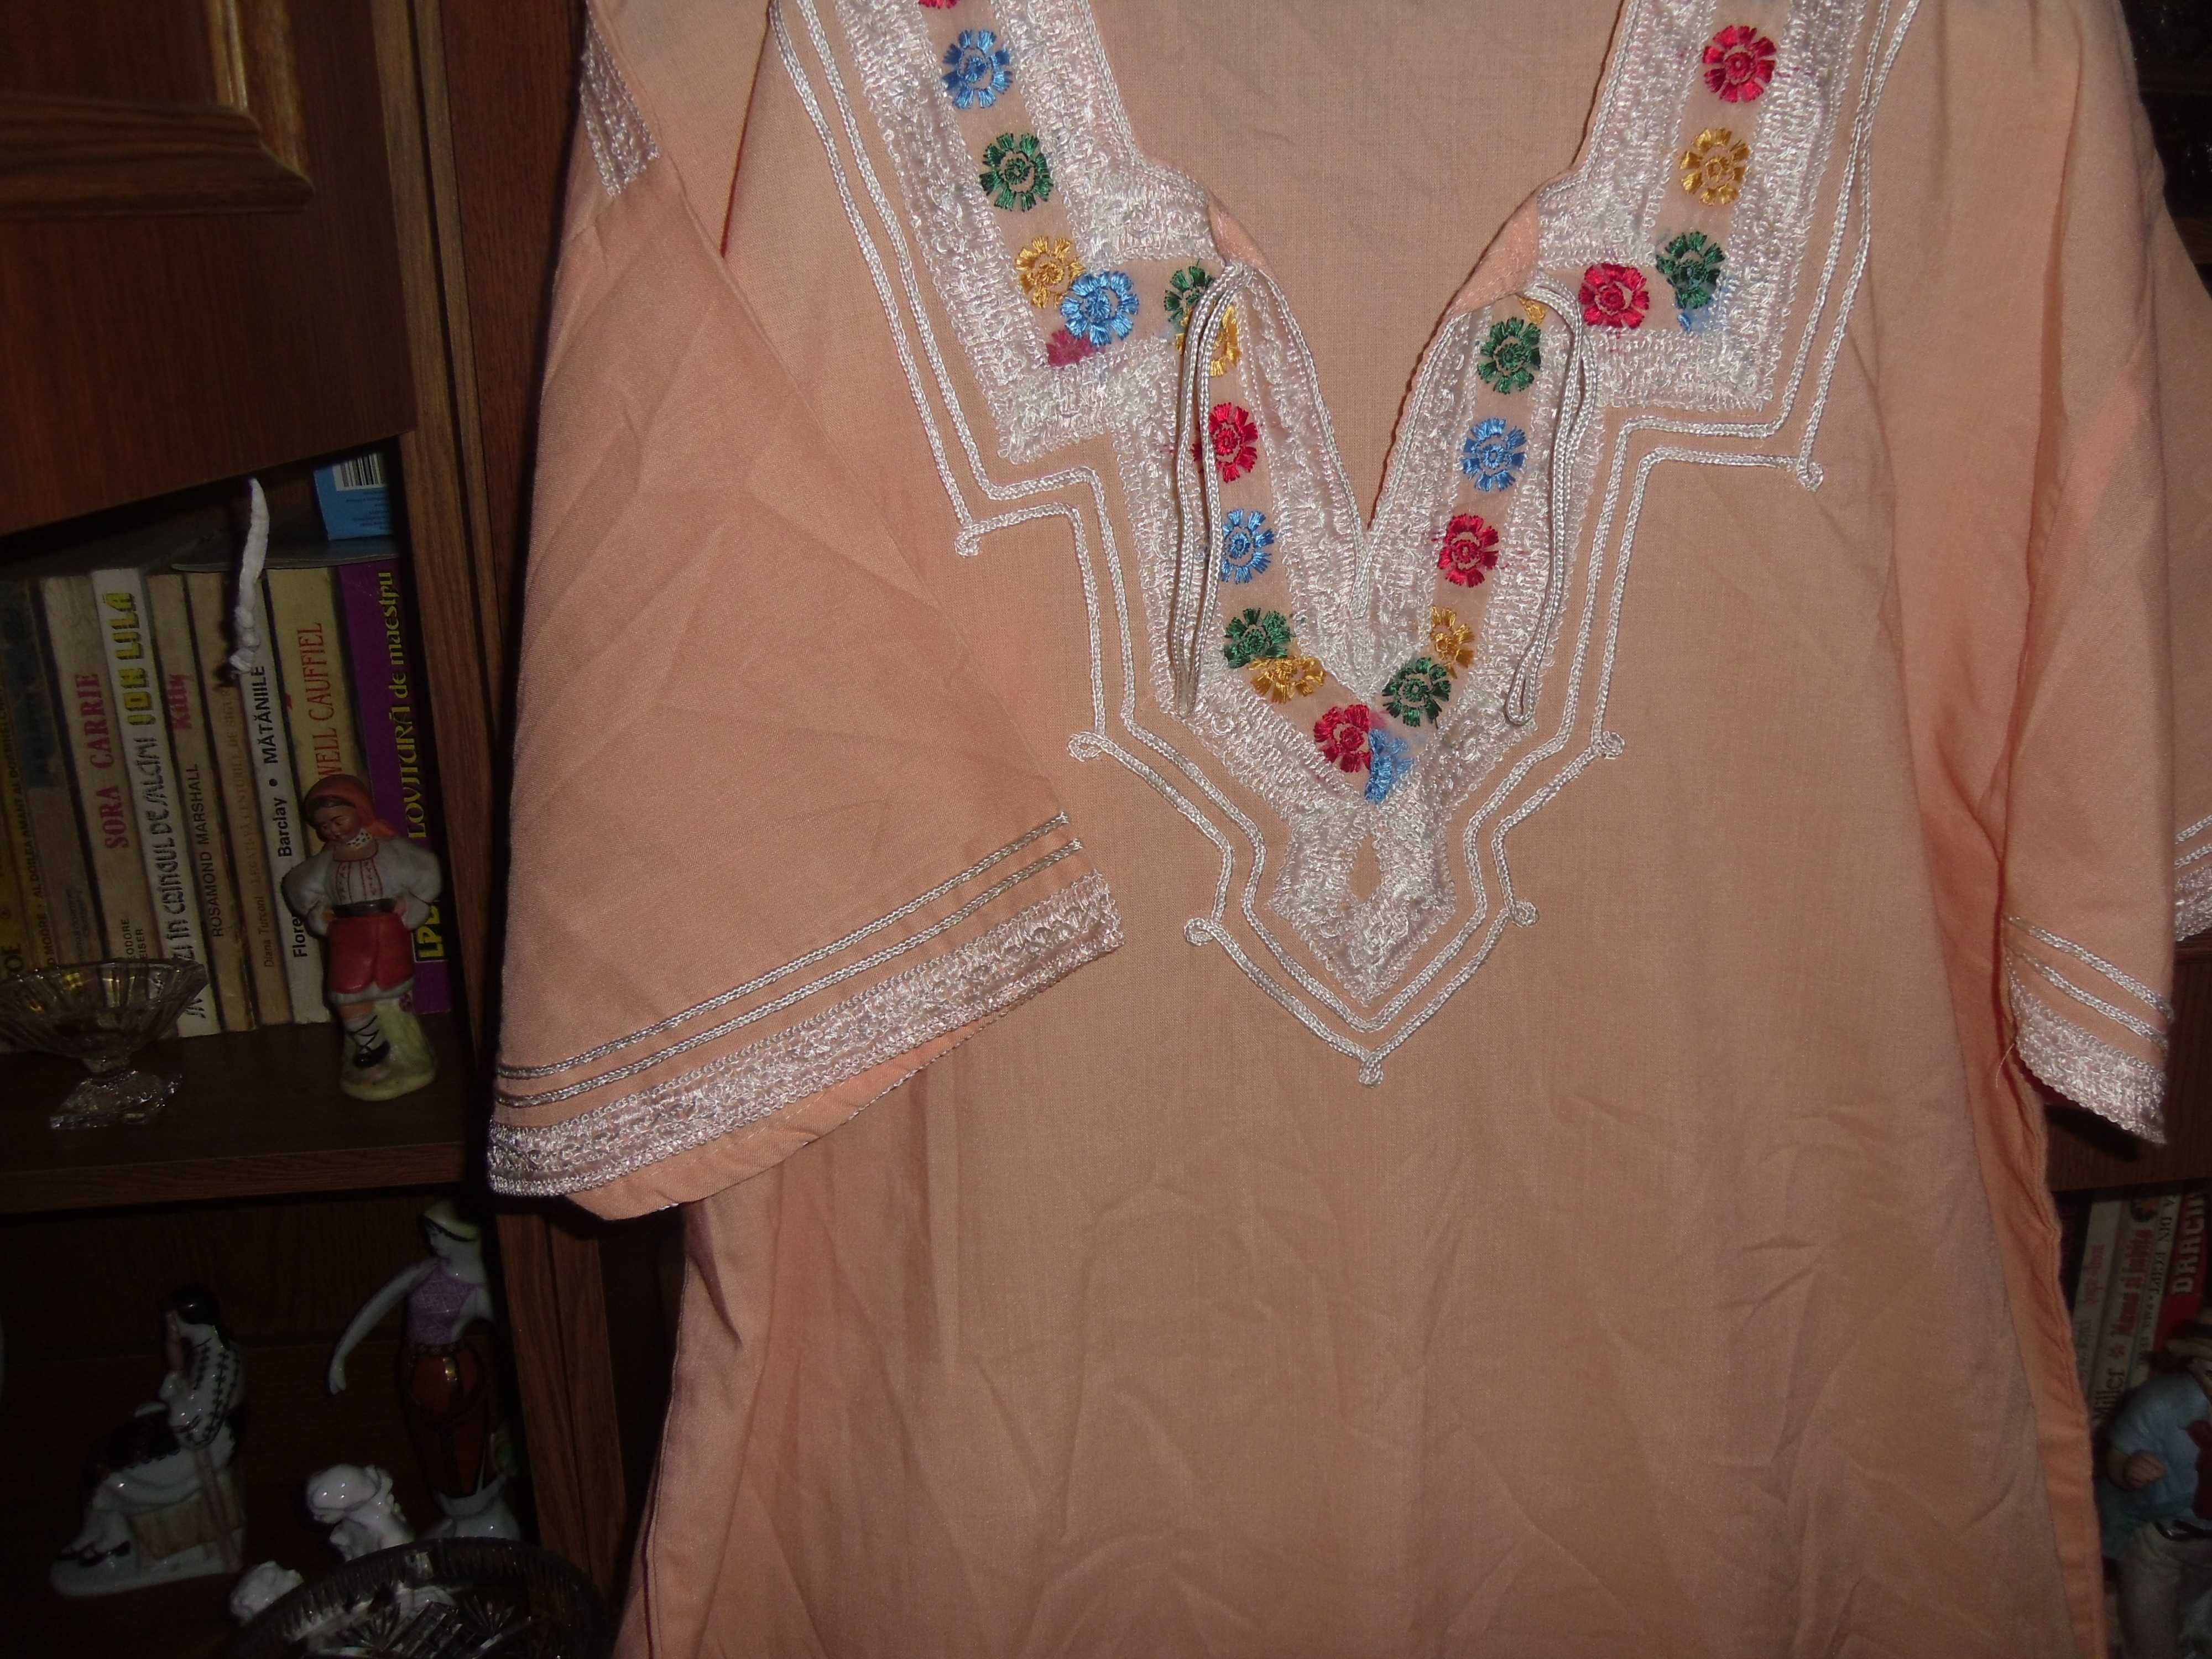 rochita orientala.cusuta de mana,vechi